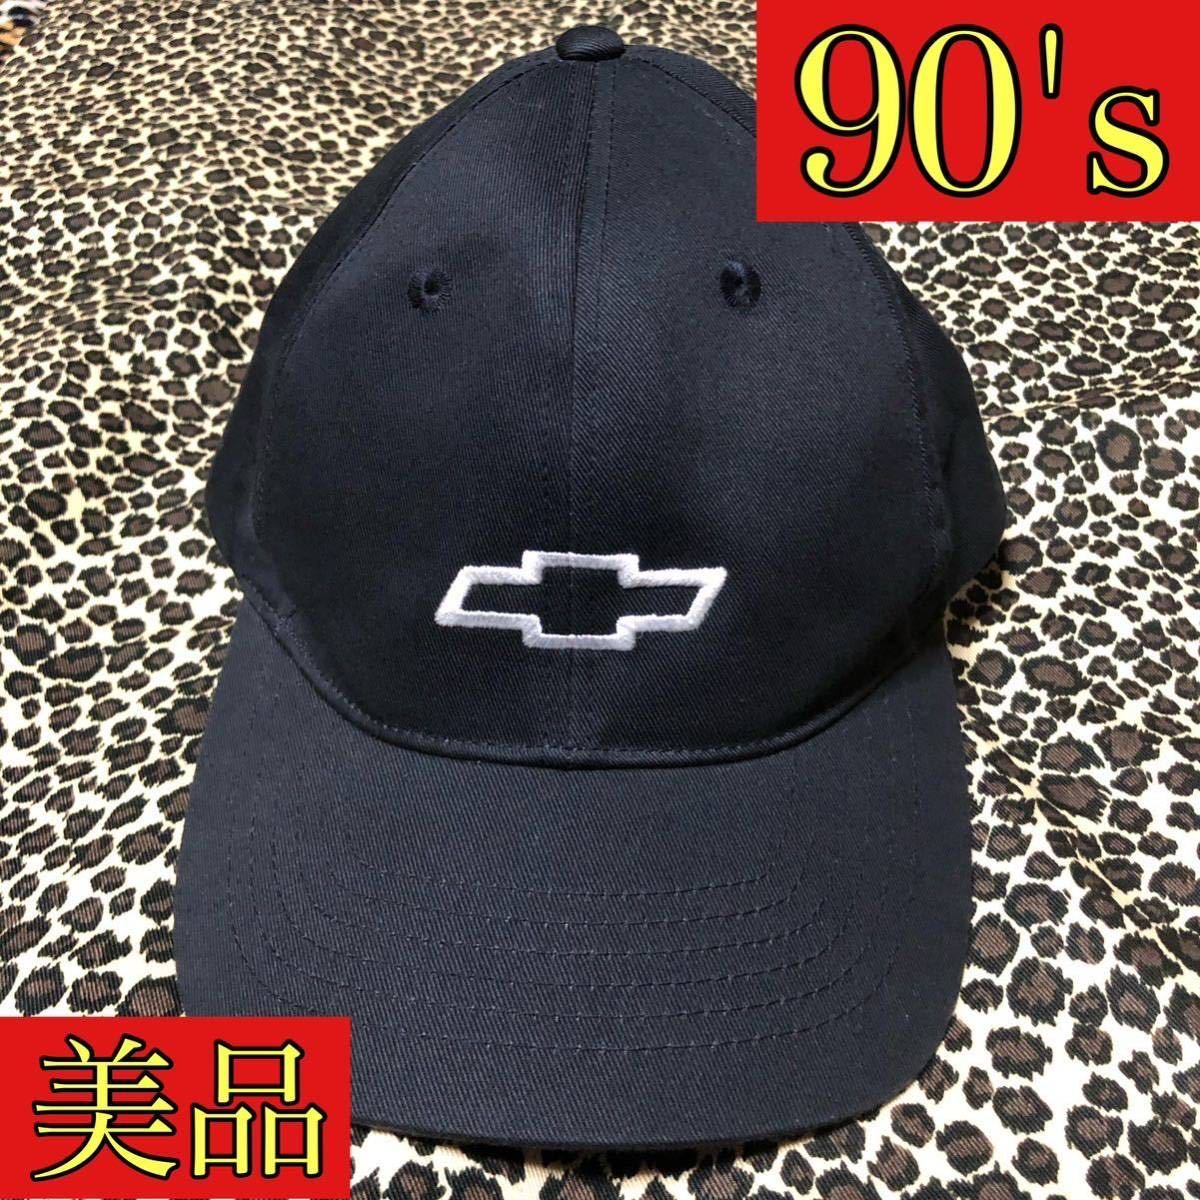 美品 90's CHEVROLET キャップ ブラック シボレー chevy 90年代 cap